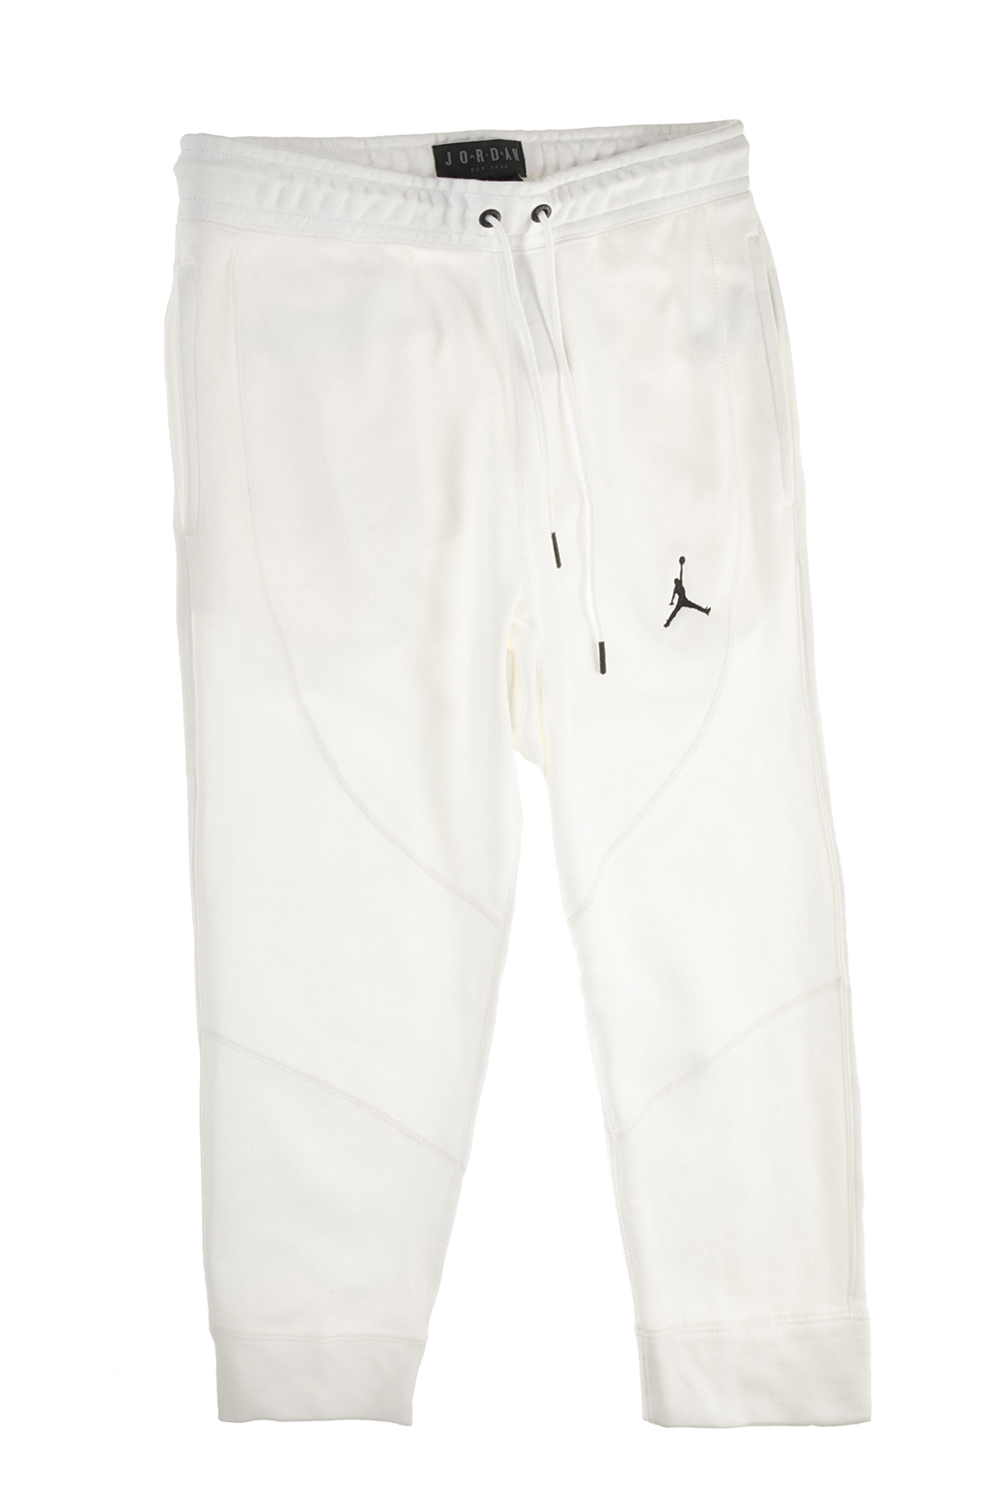 Παιδικά/Boys/Ρούχα/Αθλητικά NIKE - Παιδικό παντελόνι φόρμας NIKE JSW WINGS FLEECE 3/4 λευκό